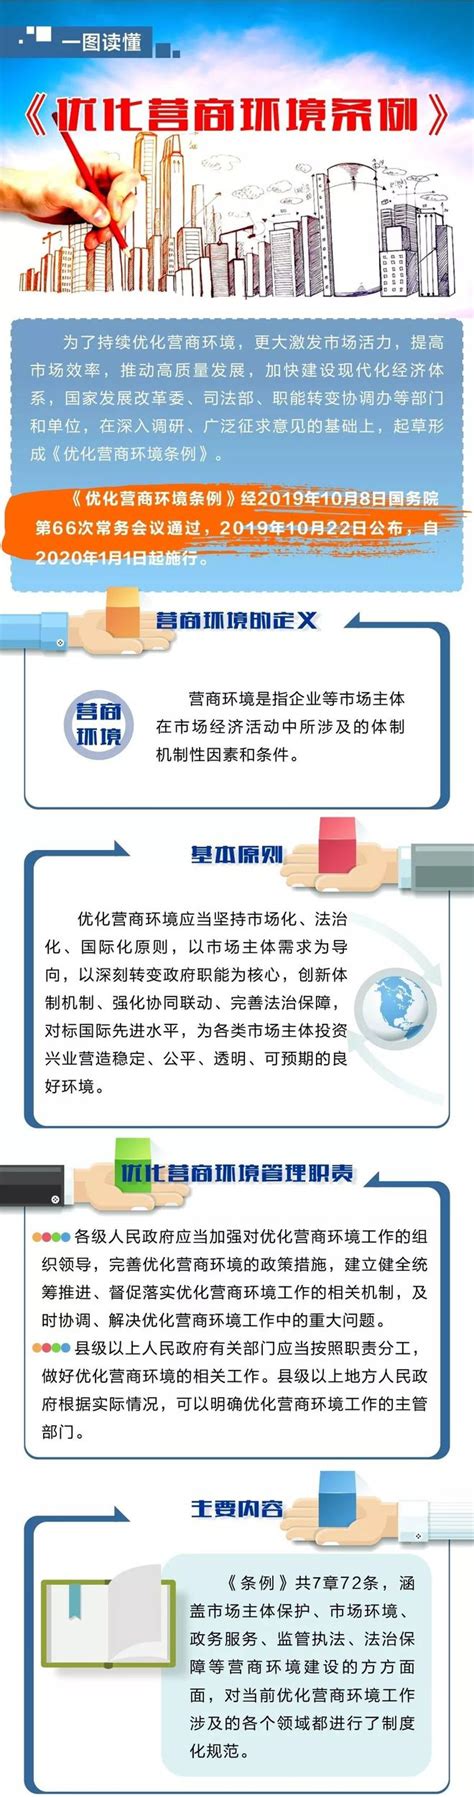 河南省优化营商环境意见建议直通车